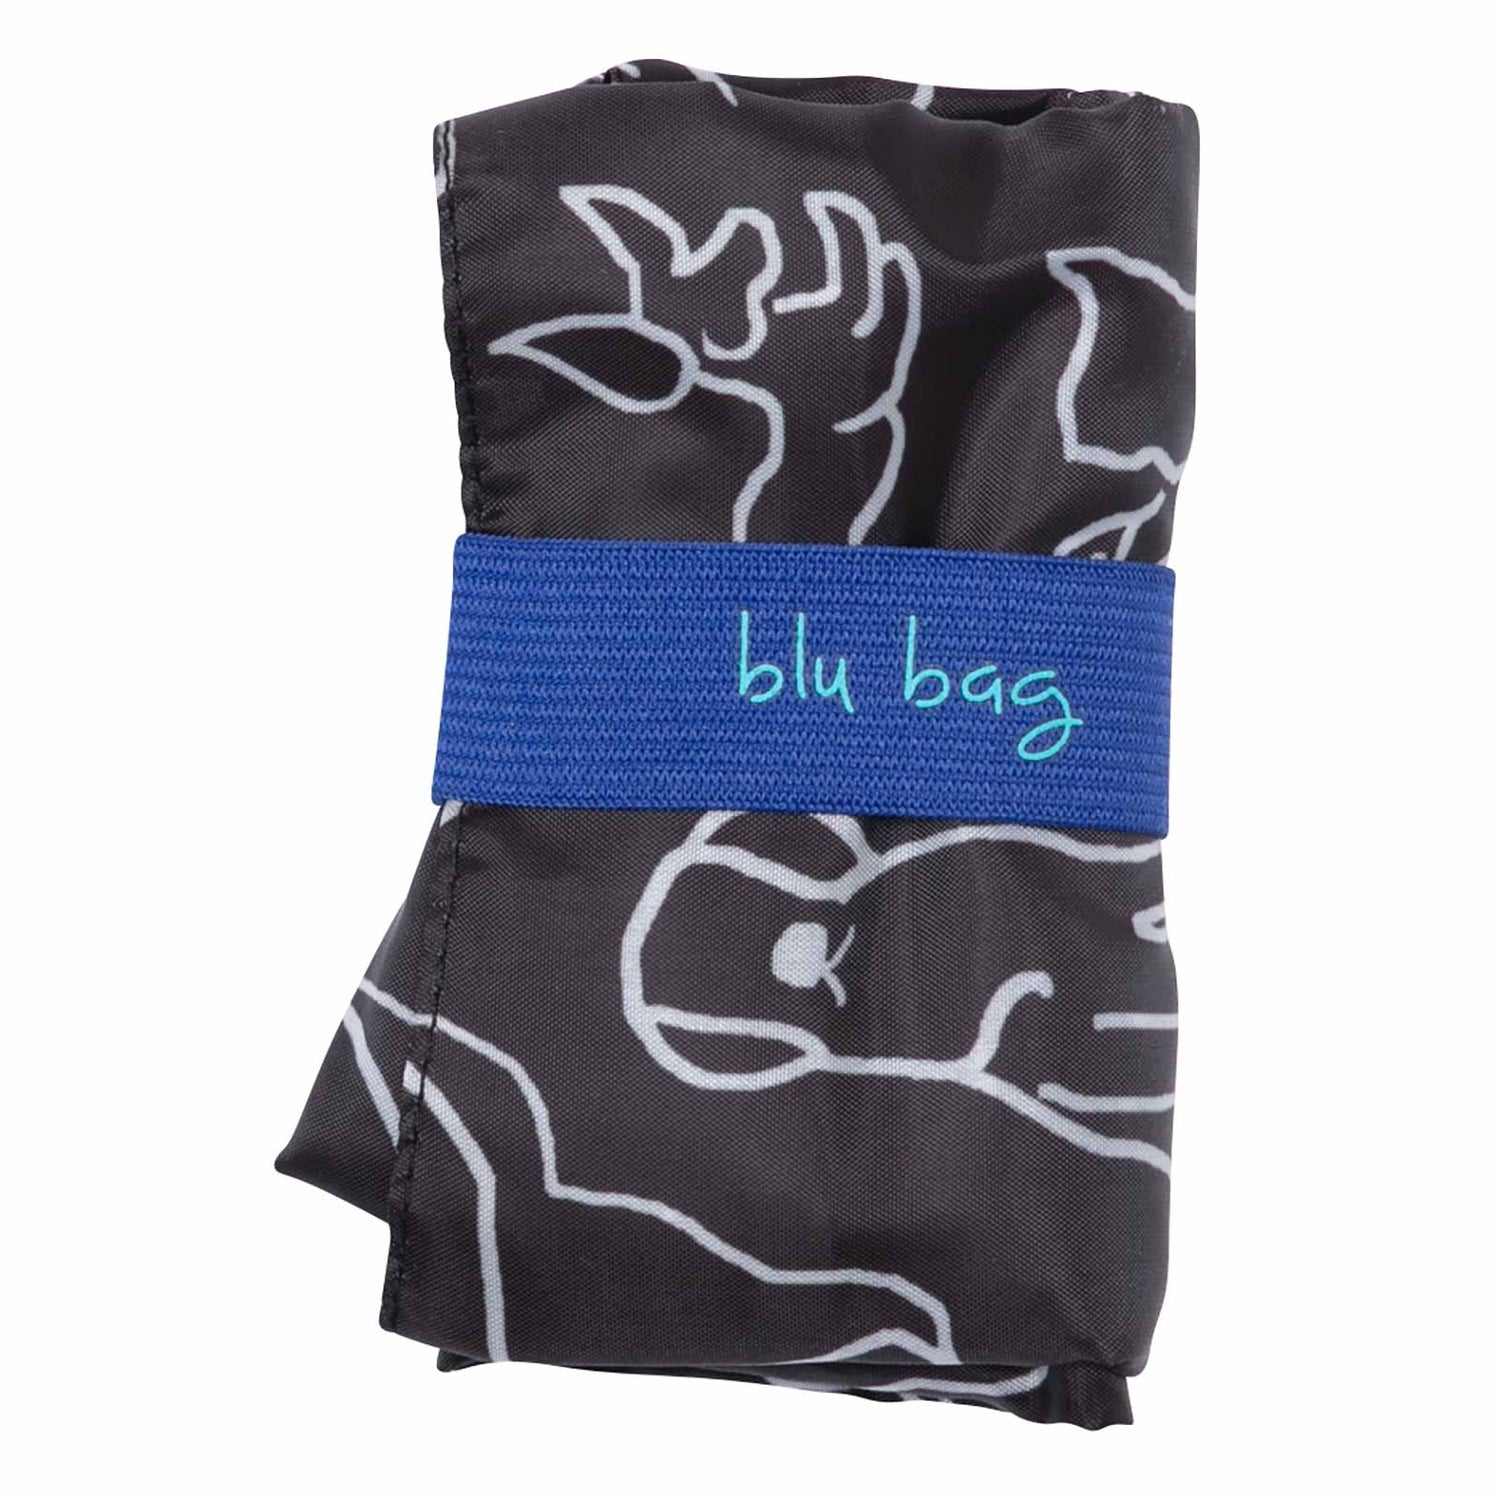 Dog And Cat Blu Bag Reusable Shopping Bag - Machine Washable Reusable Shopping Bag - rockflowerpaper